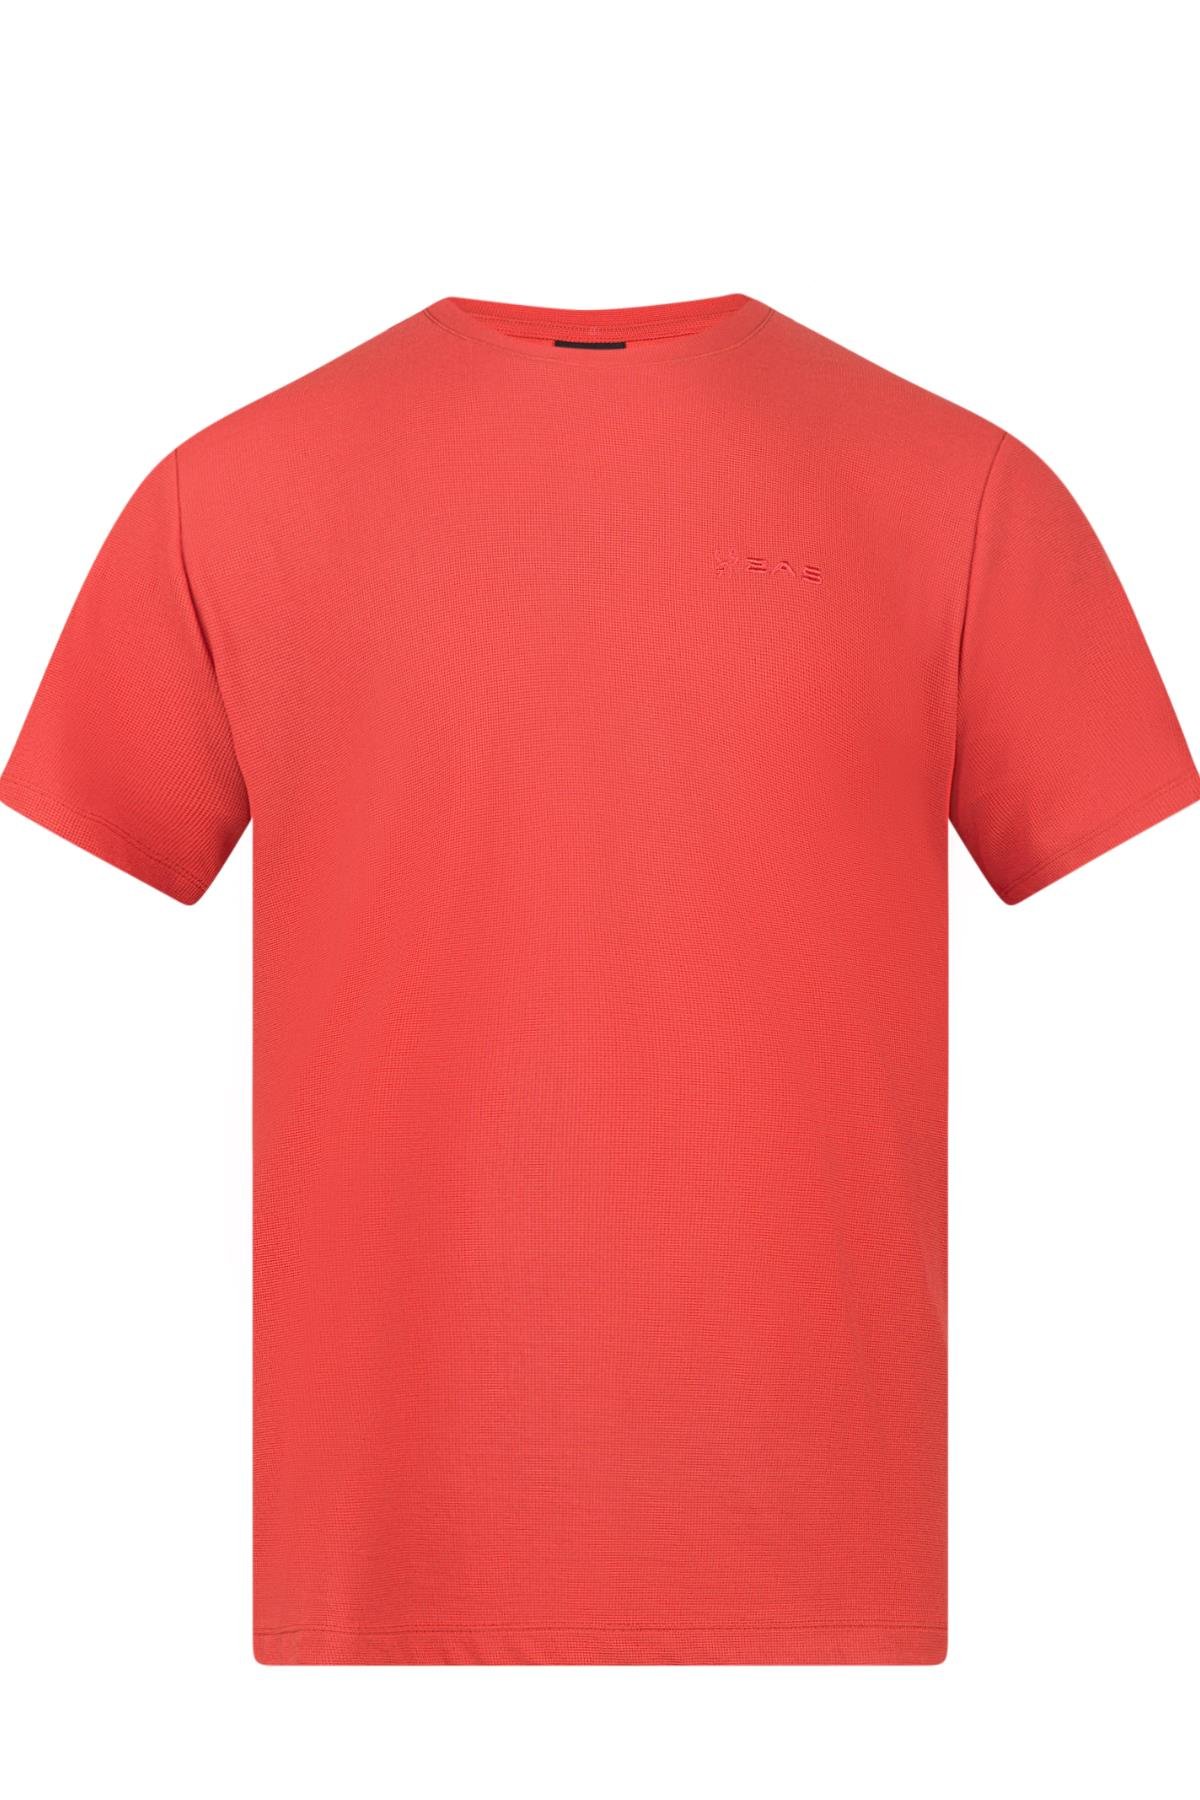 2AS Kalei Sıfır Yaka T-Shirt Kırmızı